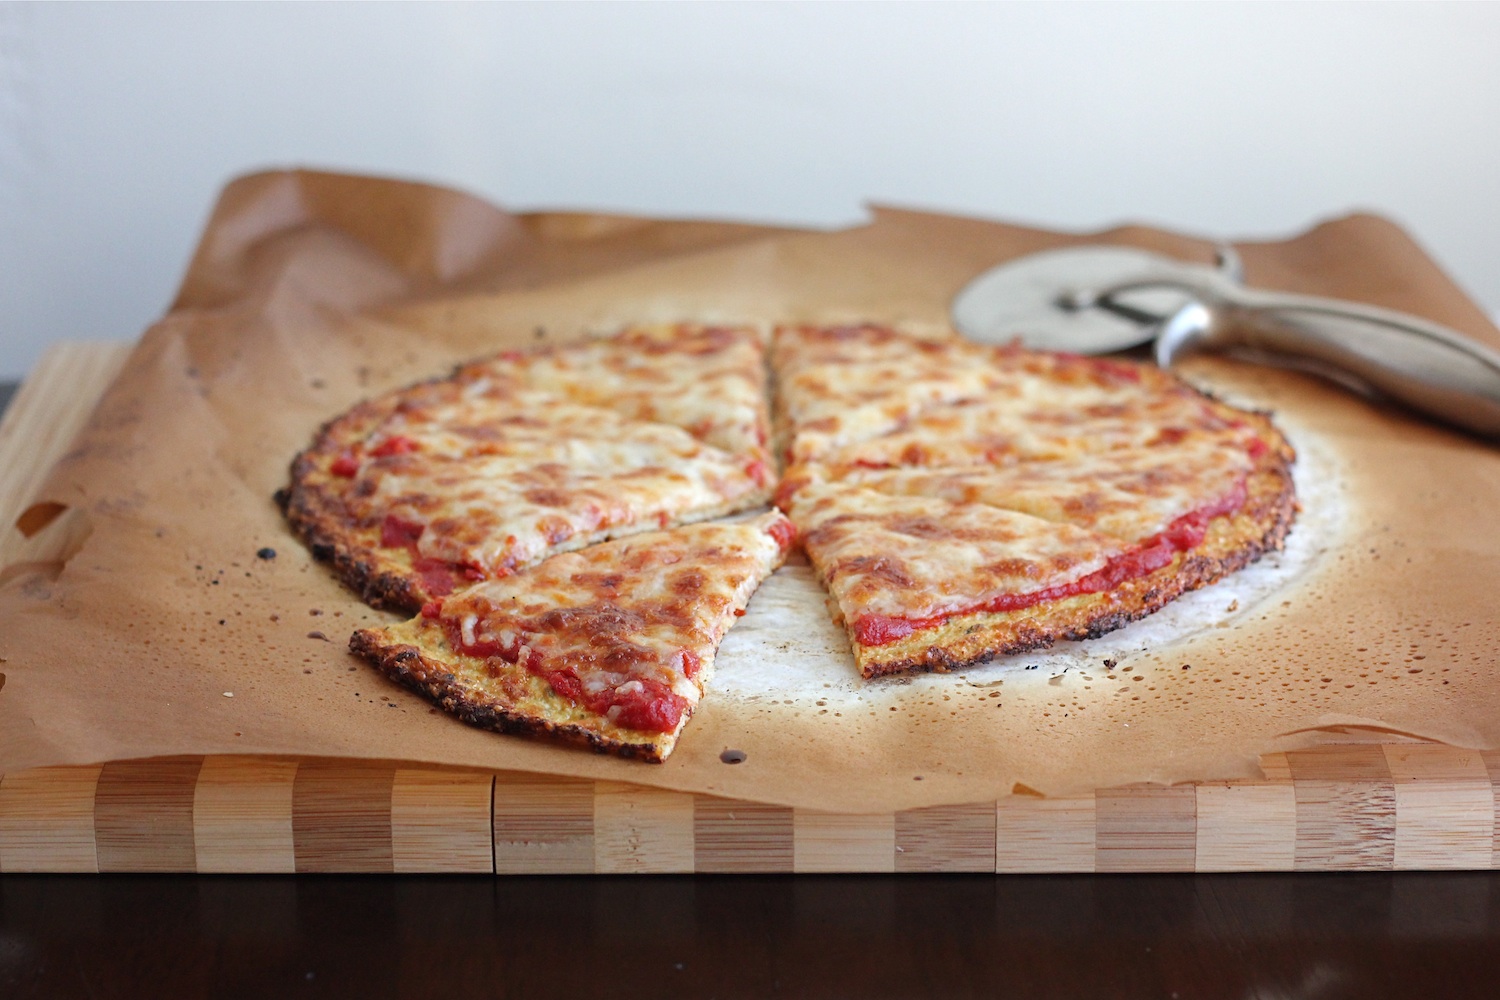 descriptive essay on pizza